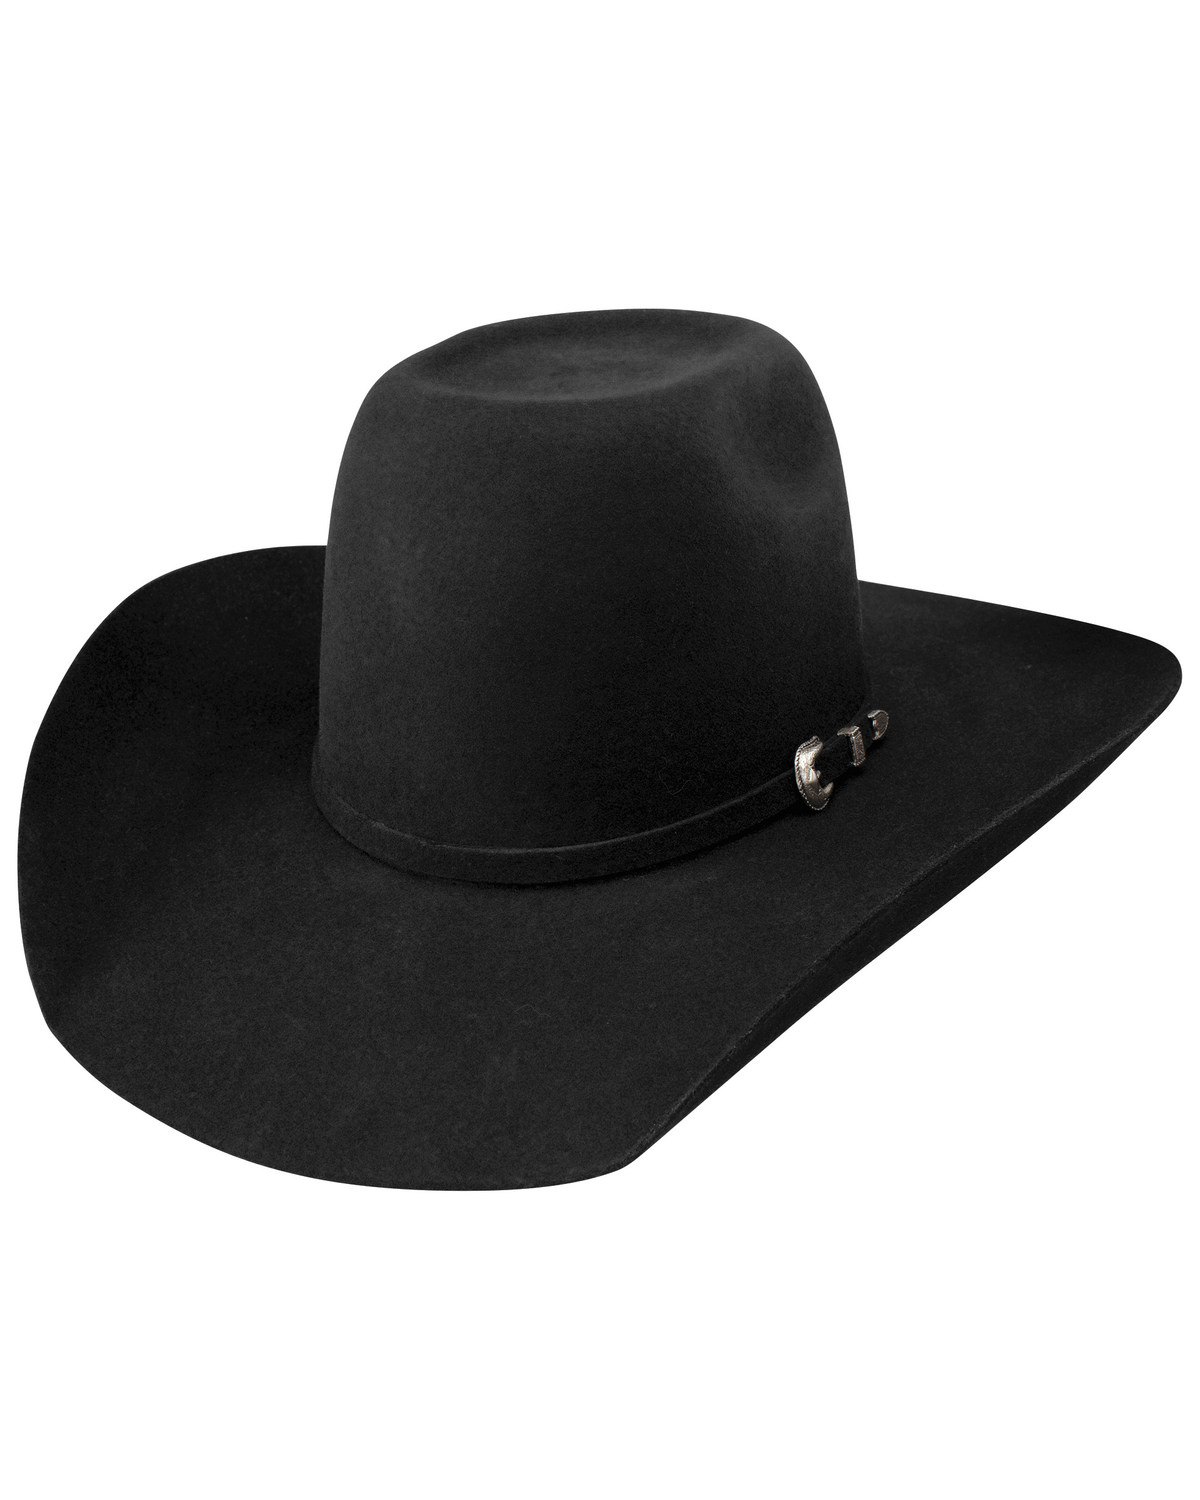 Resistol Pay Window Jr. Felt Cowboy Hat